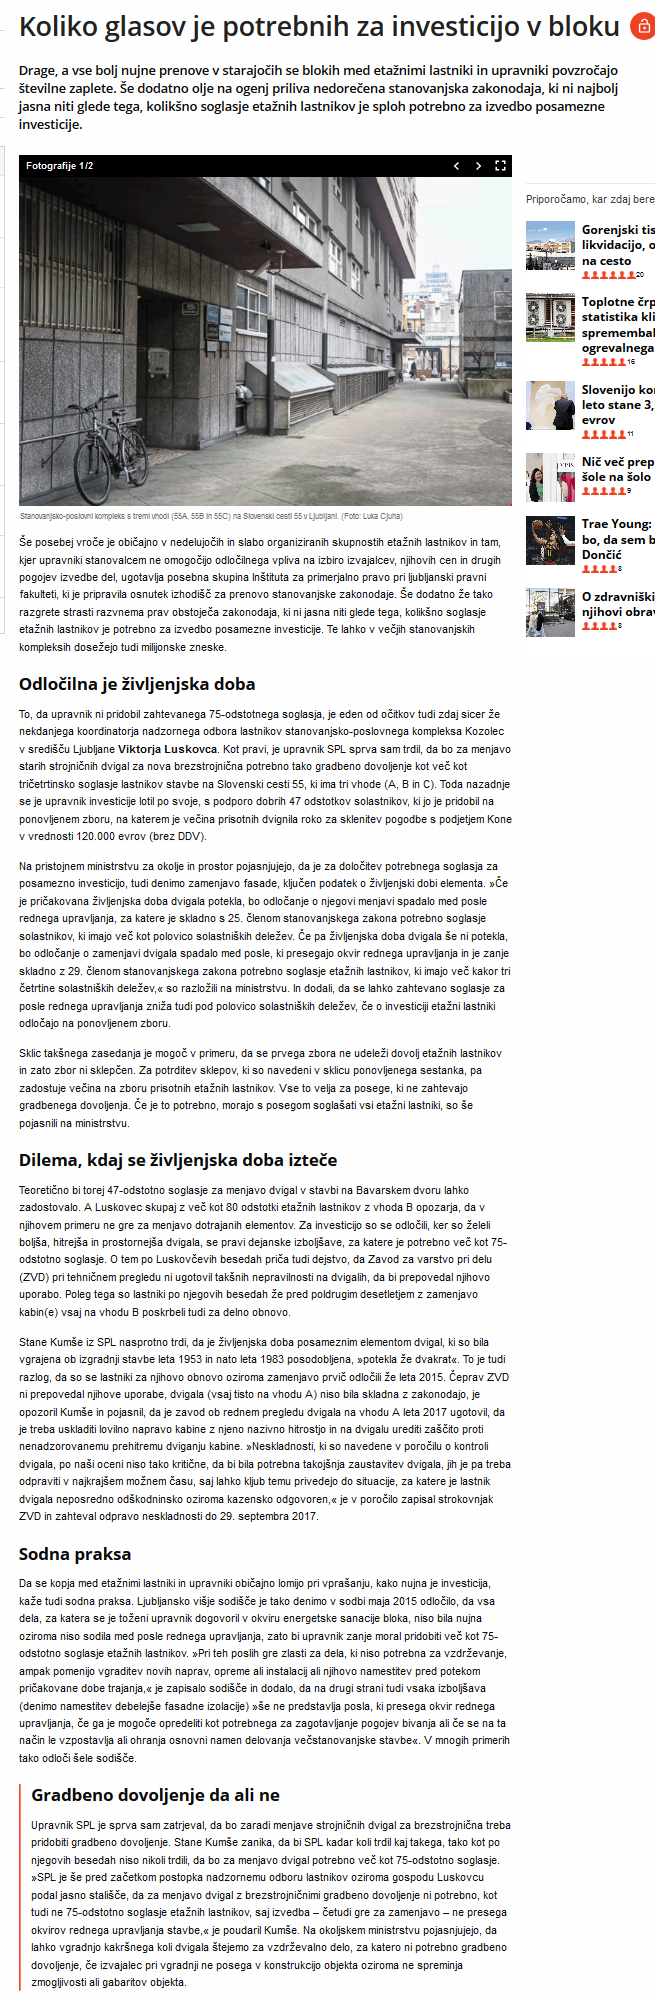 screenshot-www.dnevnik.si-2019-01-29-15-47-55(1).png